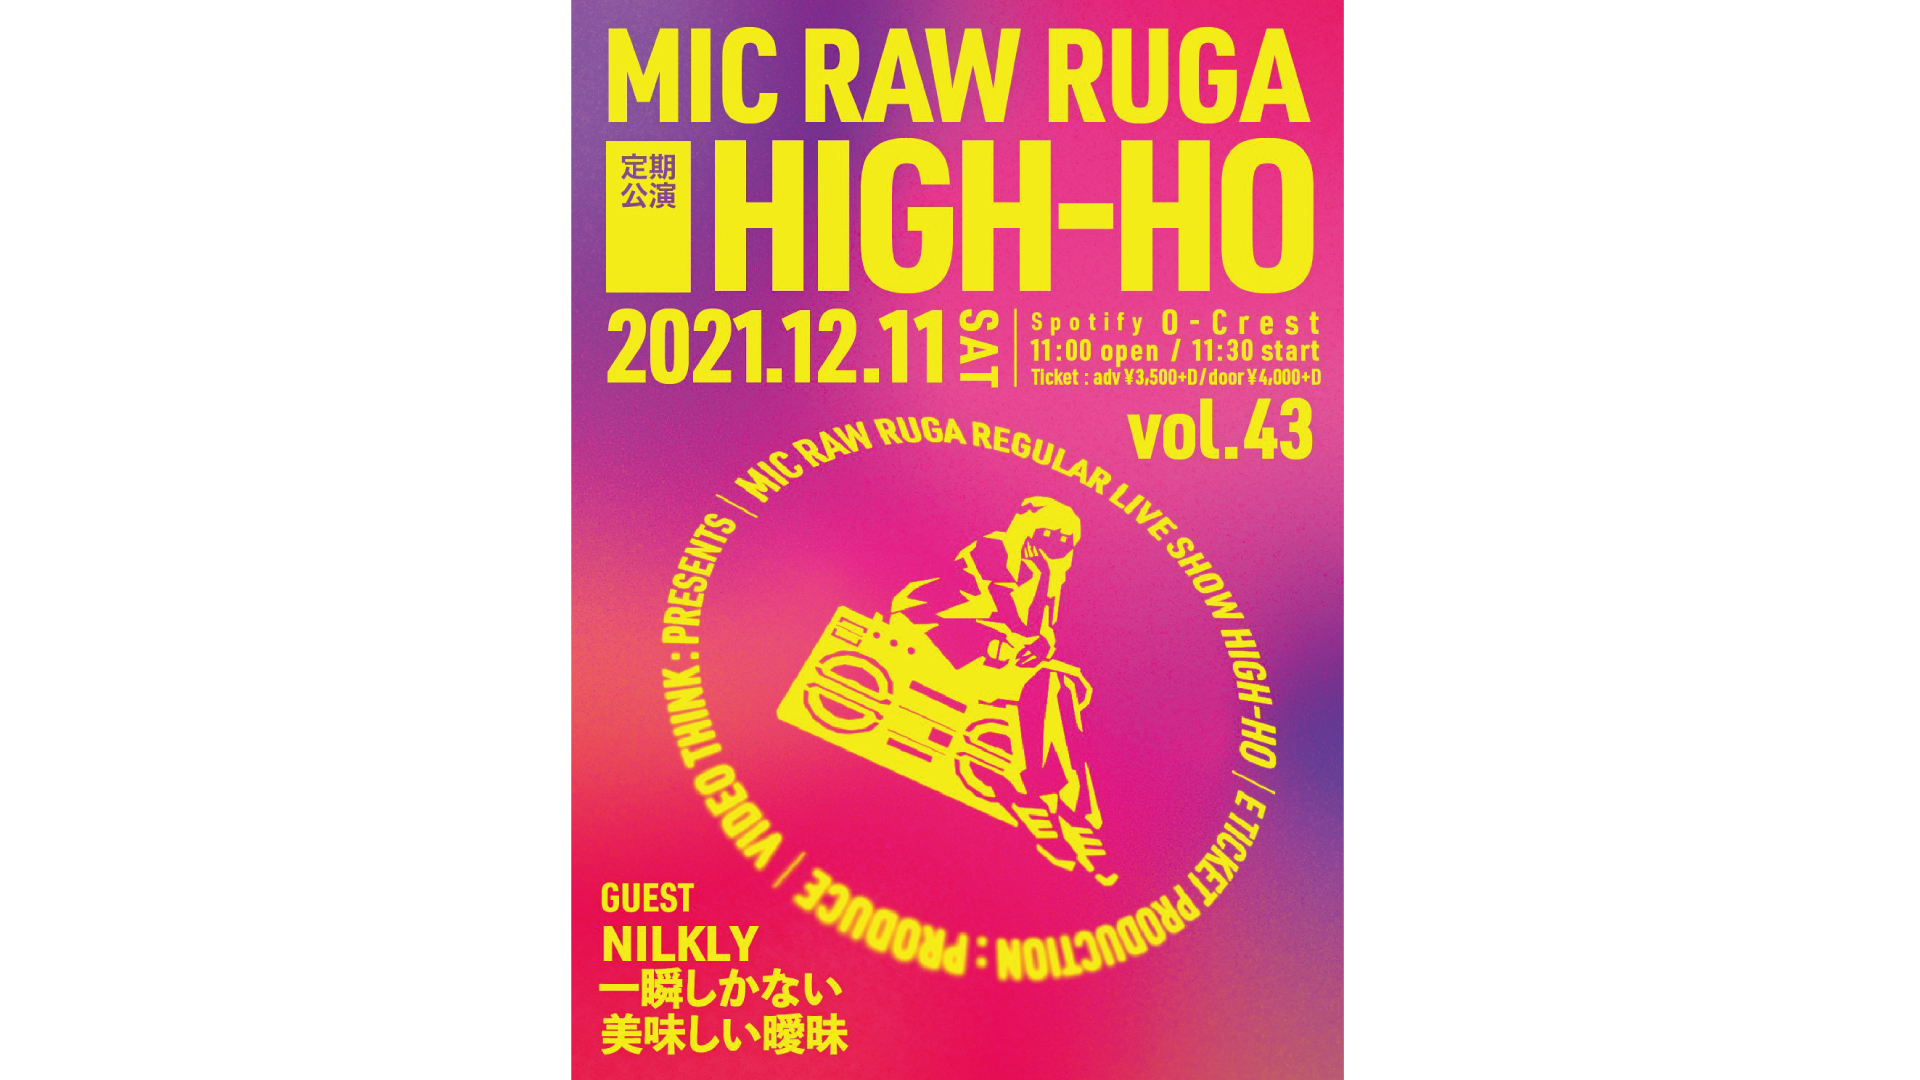 MIC RAW RUGA 定期公演 HIGH-HO vol.43